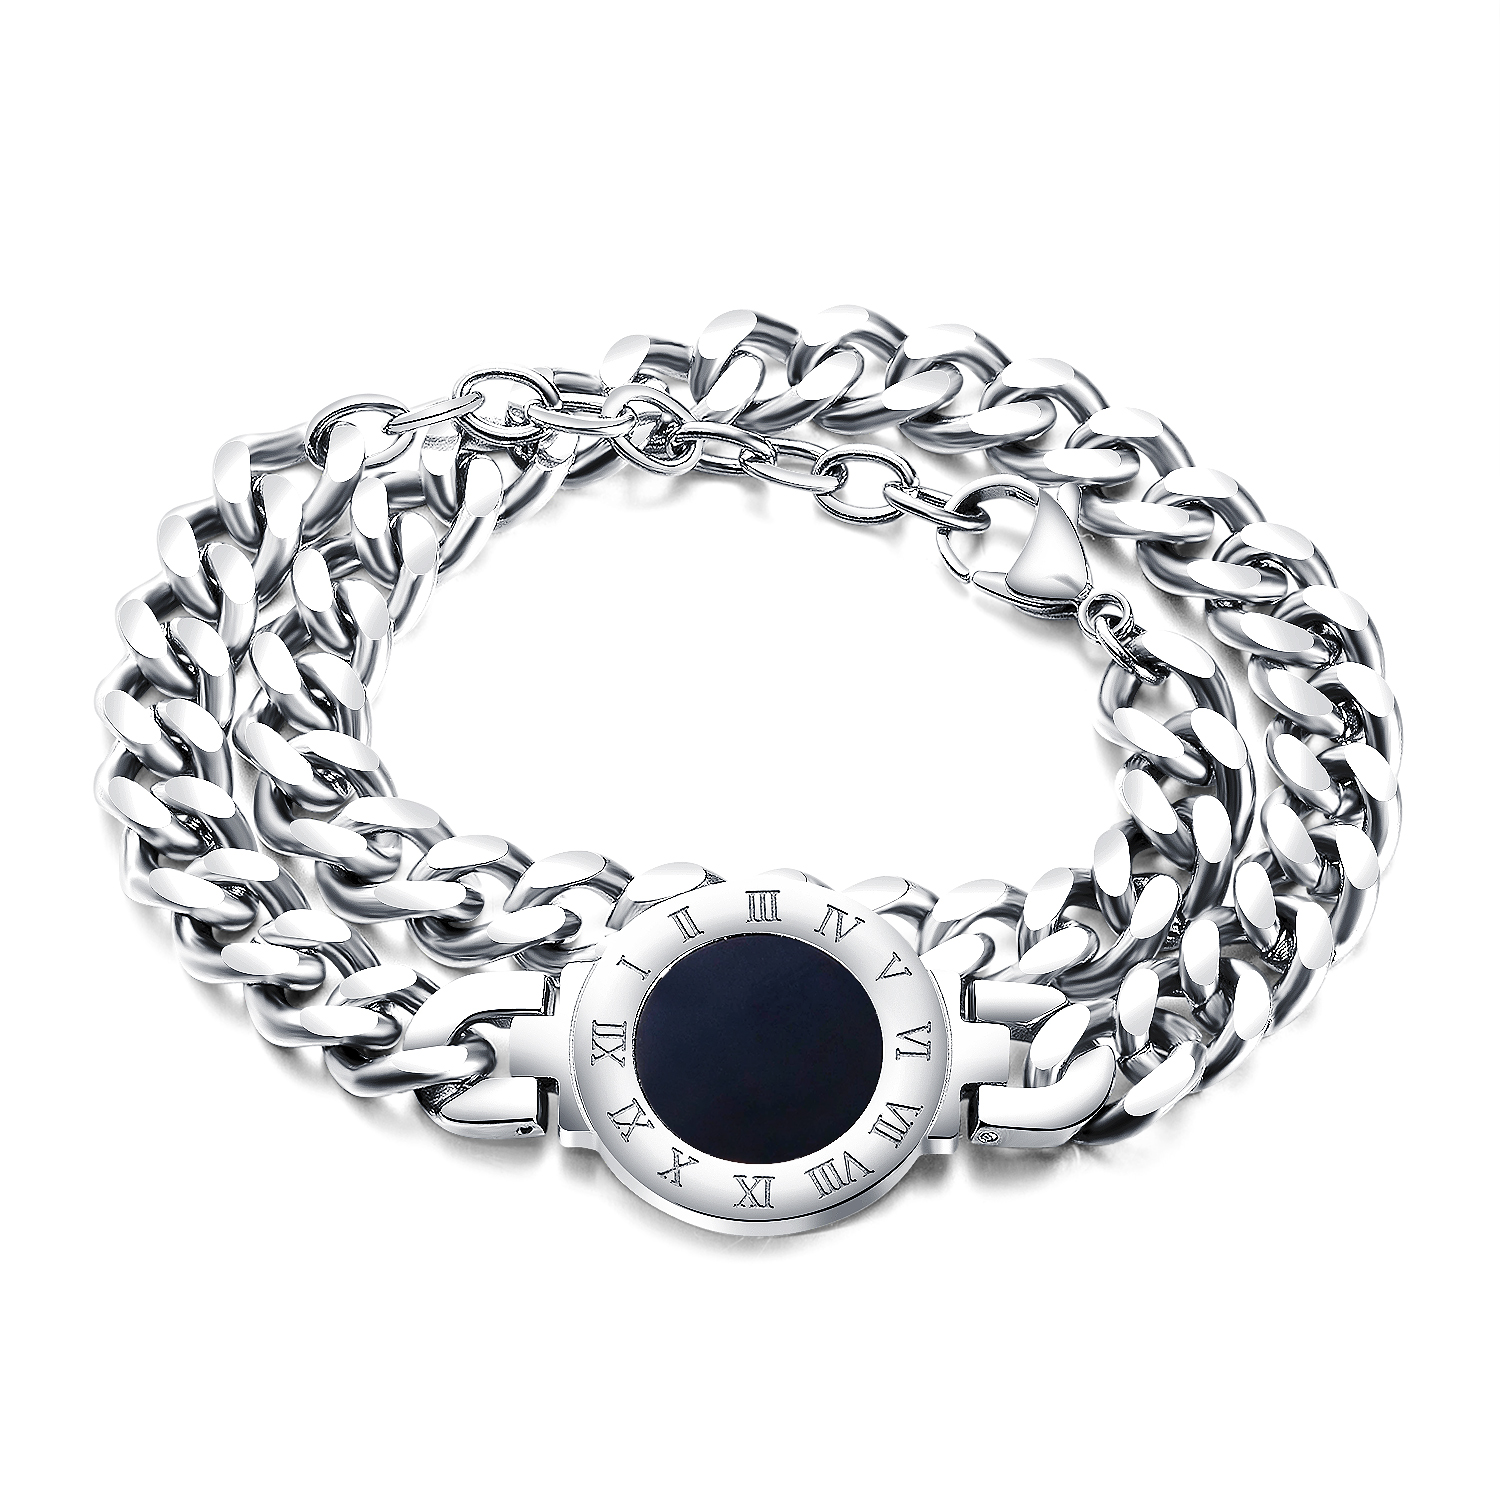 Charm bracelet wholesale suppliers